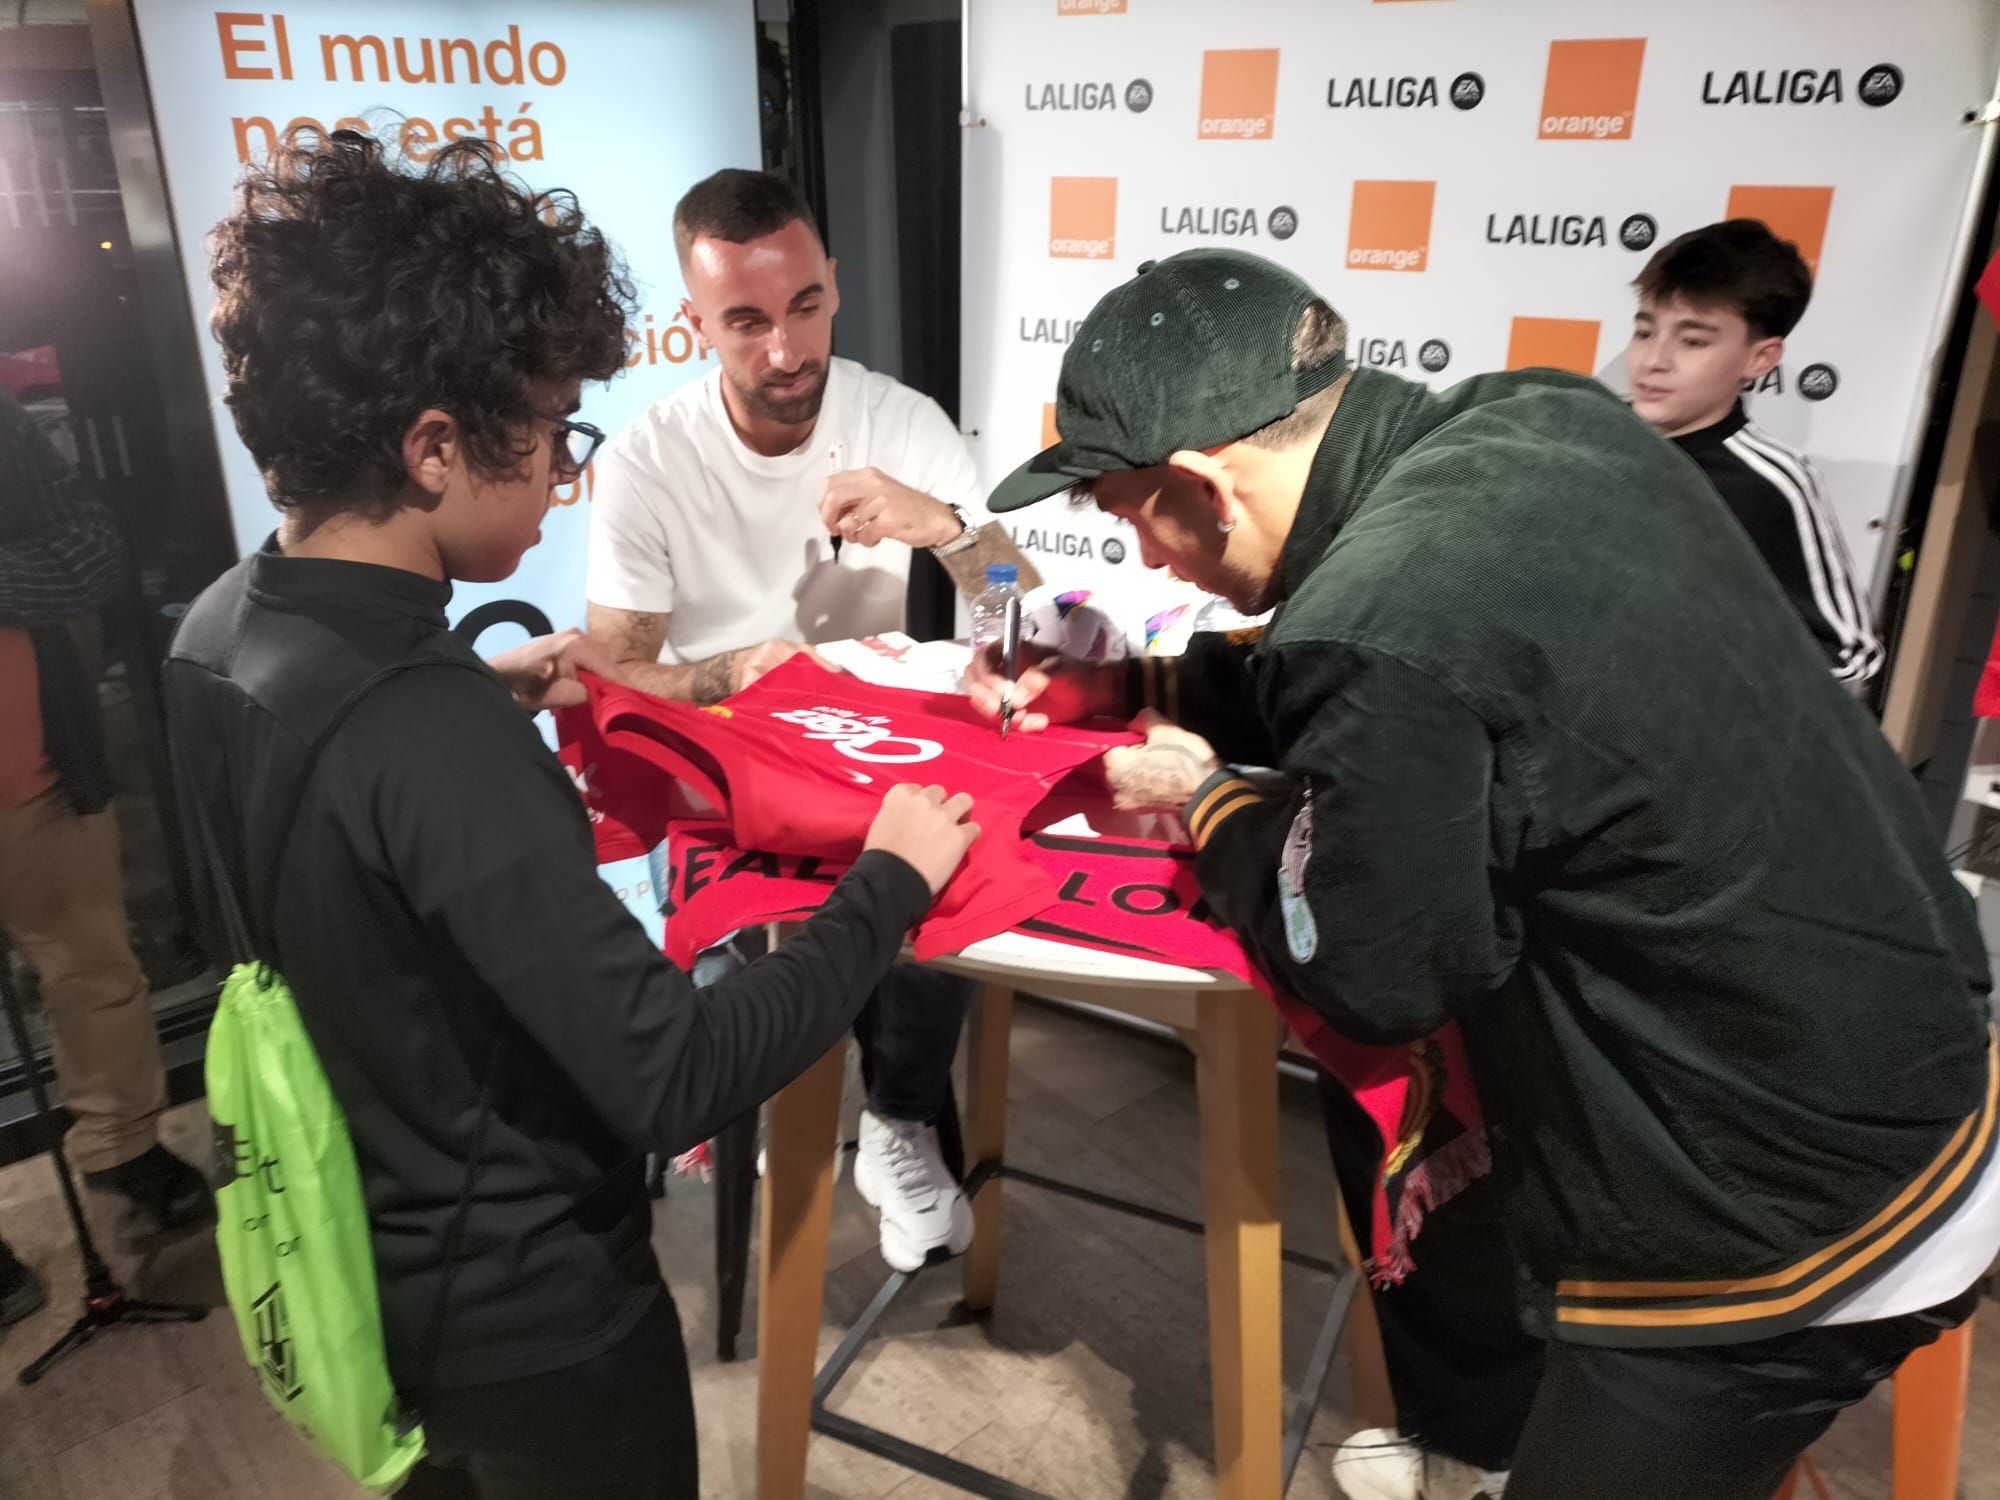 Firma de autógrafos de Sergi Darder y Antonio Sánchez, jugadores del Mallorca